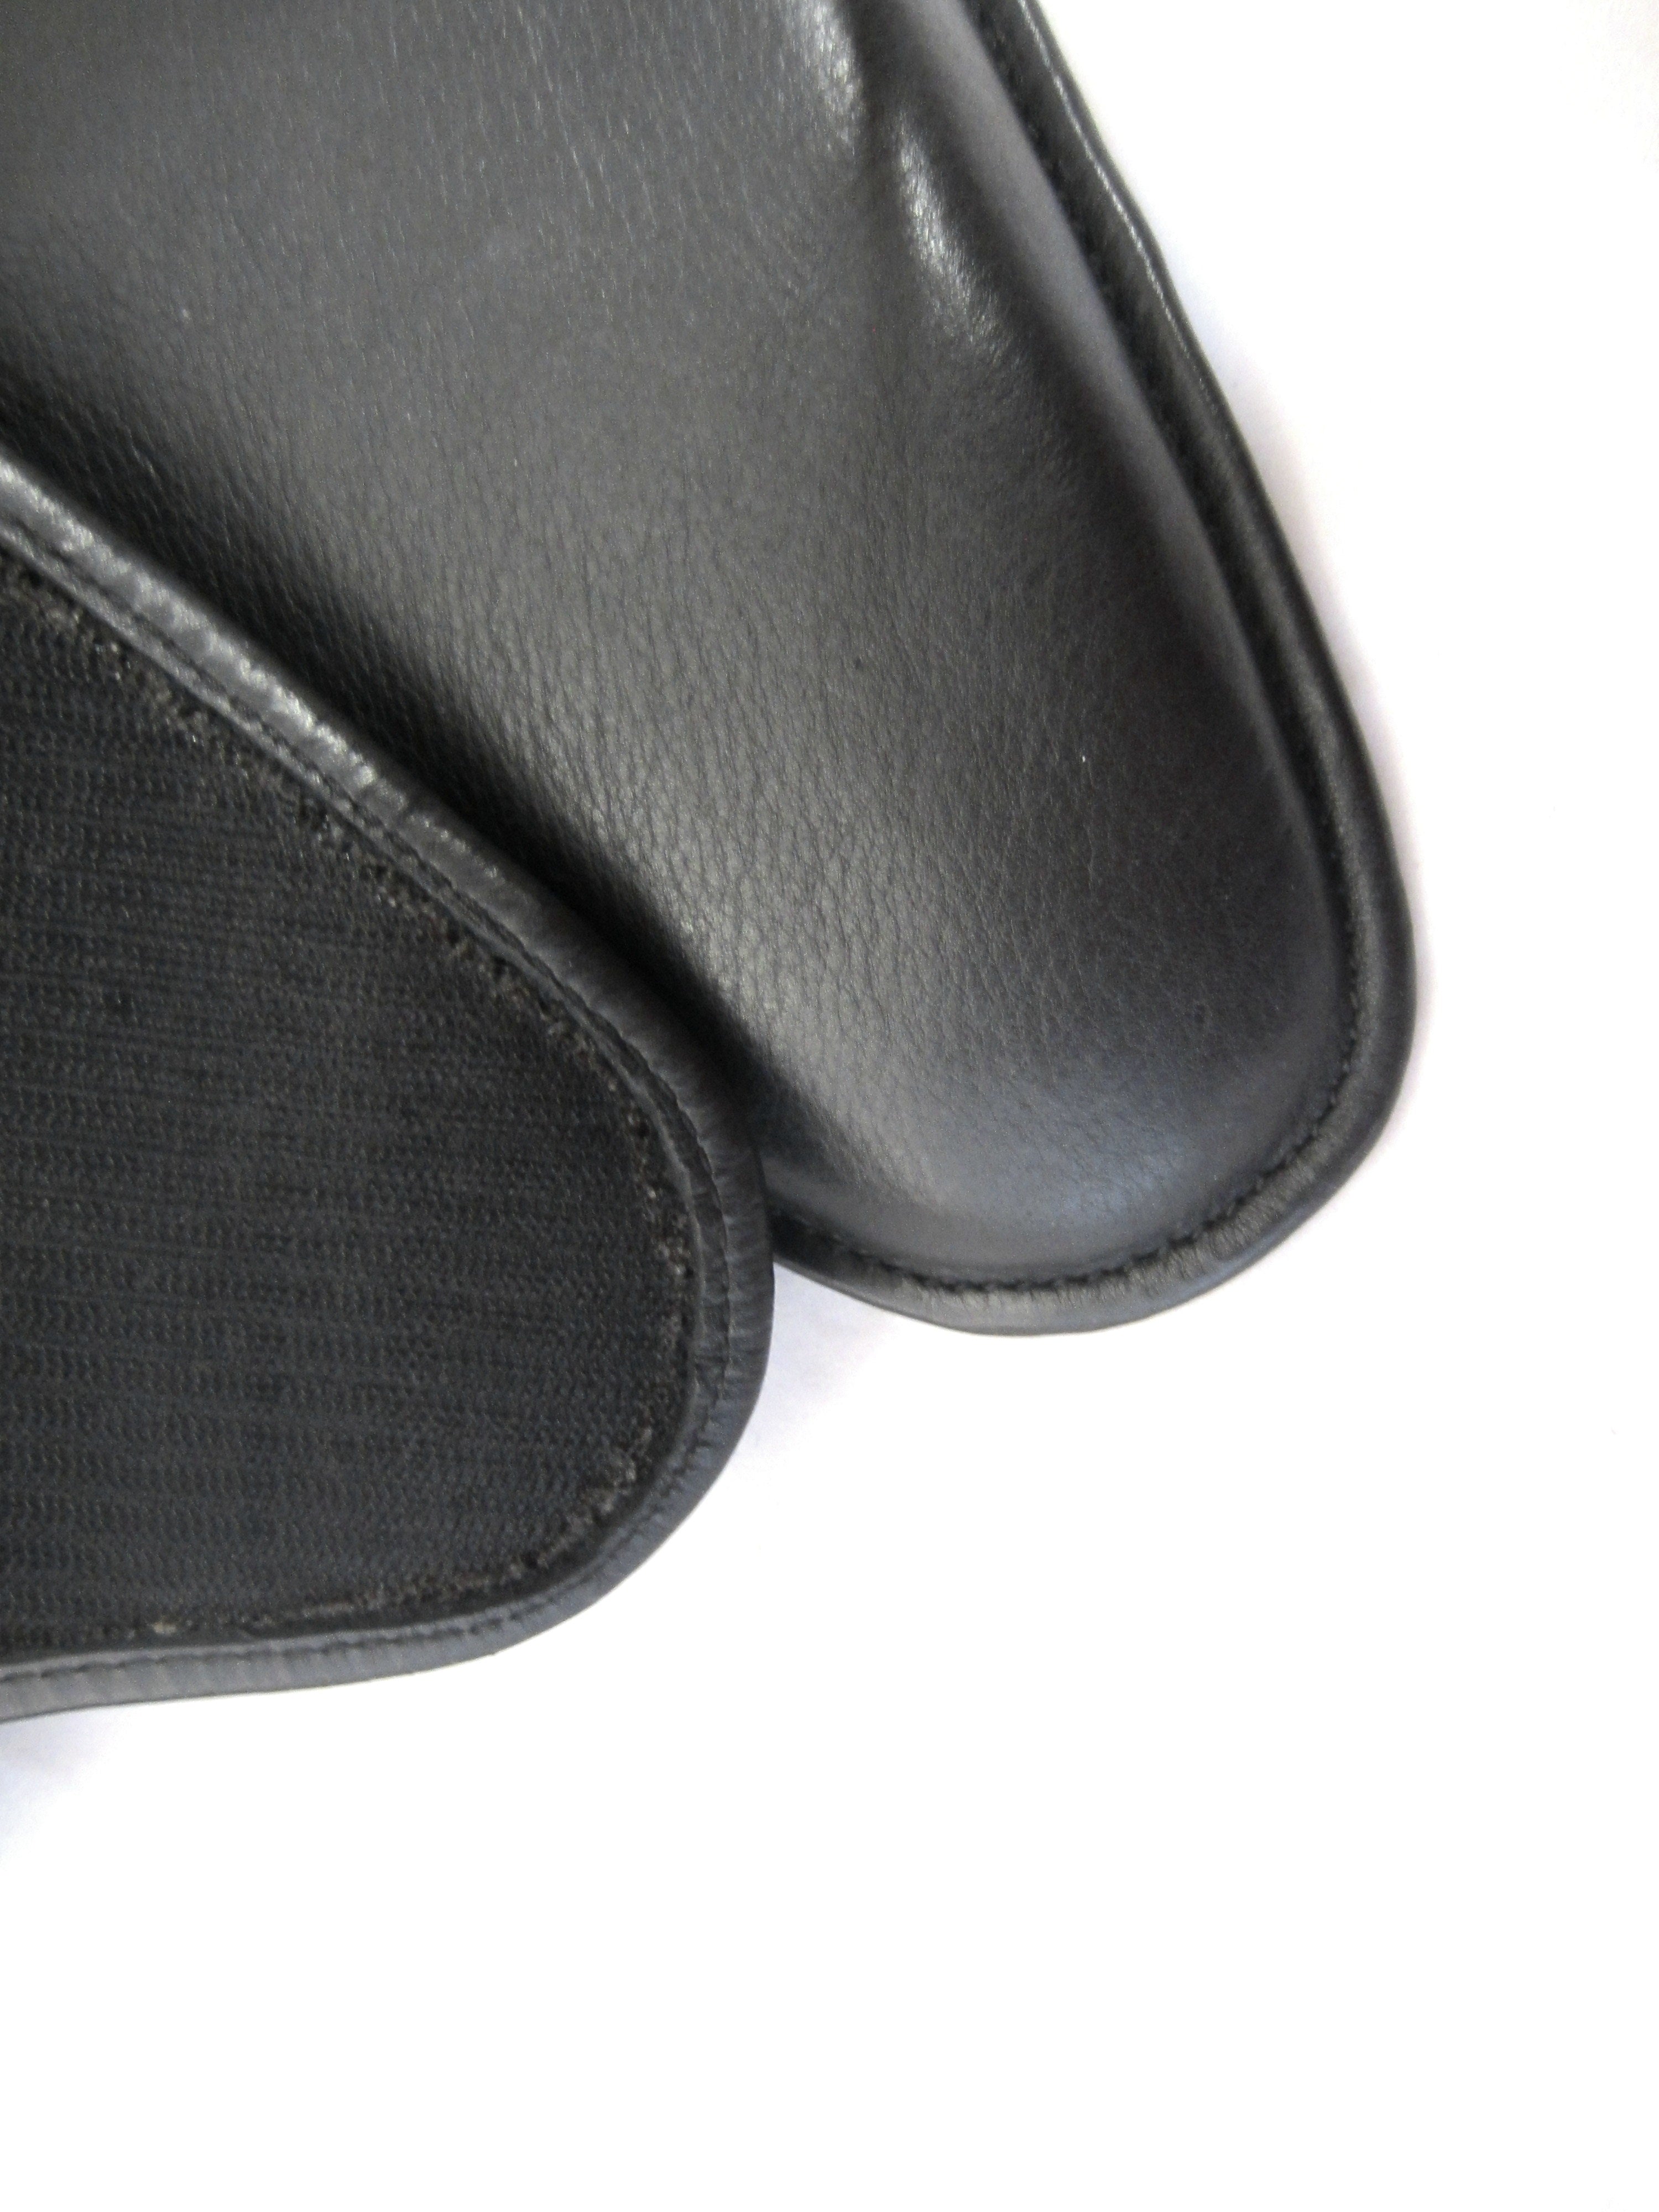 5-4-4 cm front raised Velcro cushion dressage form; Panels/saddle cushions